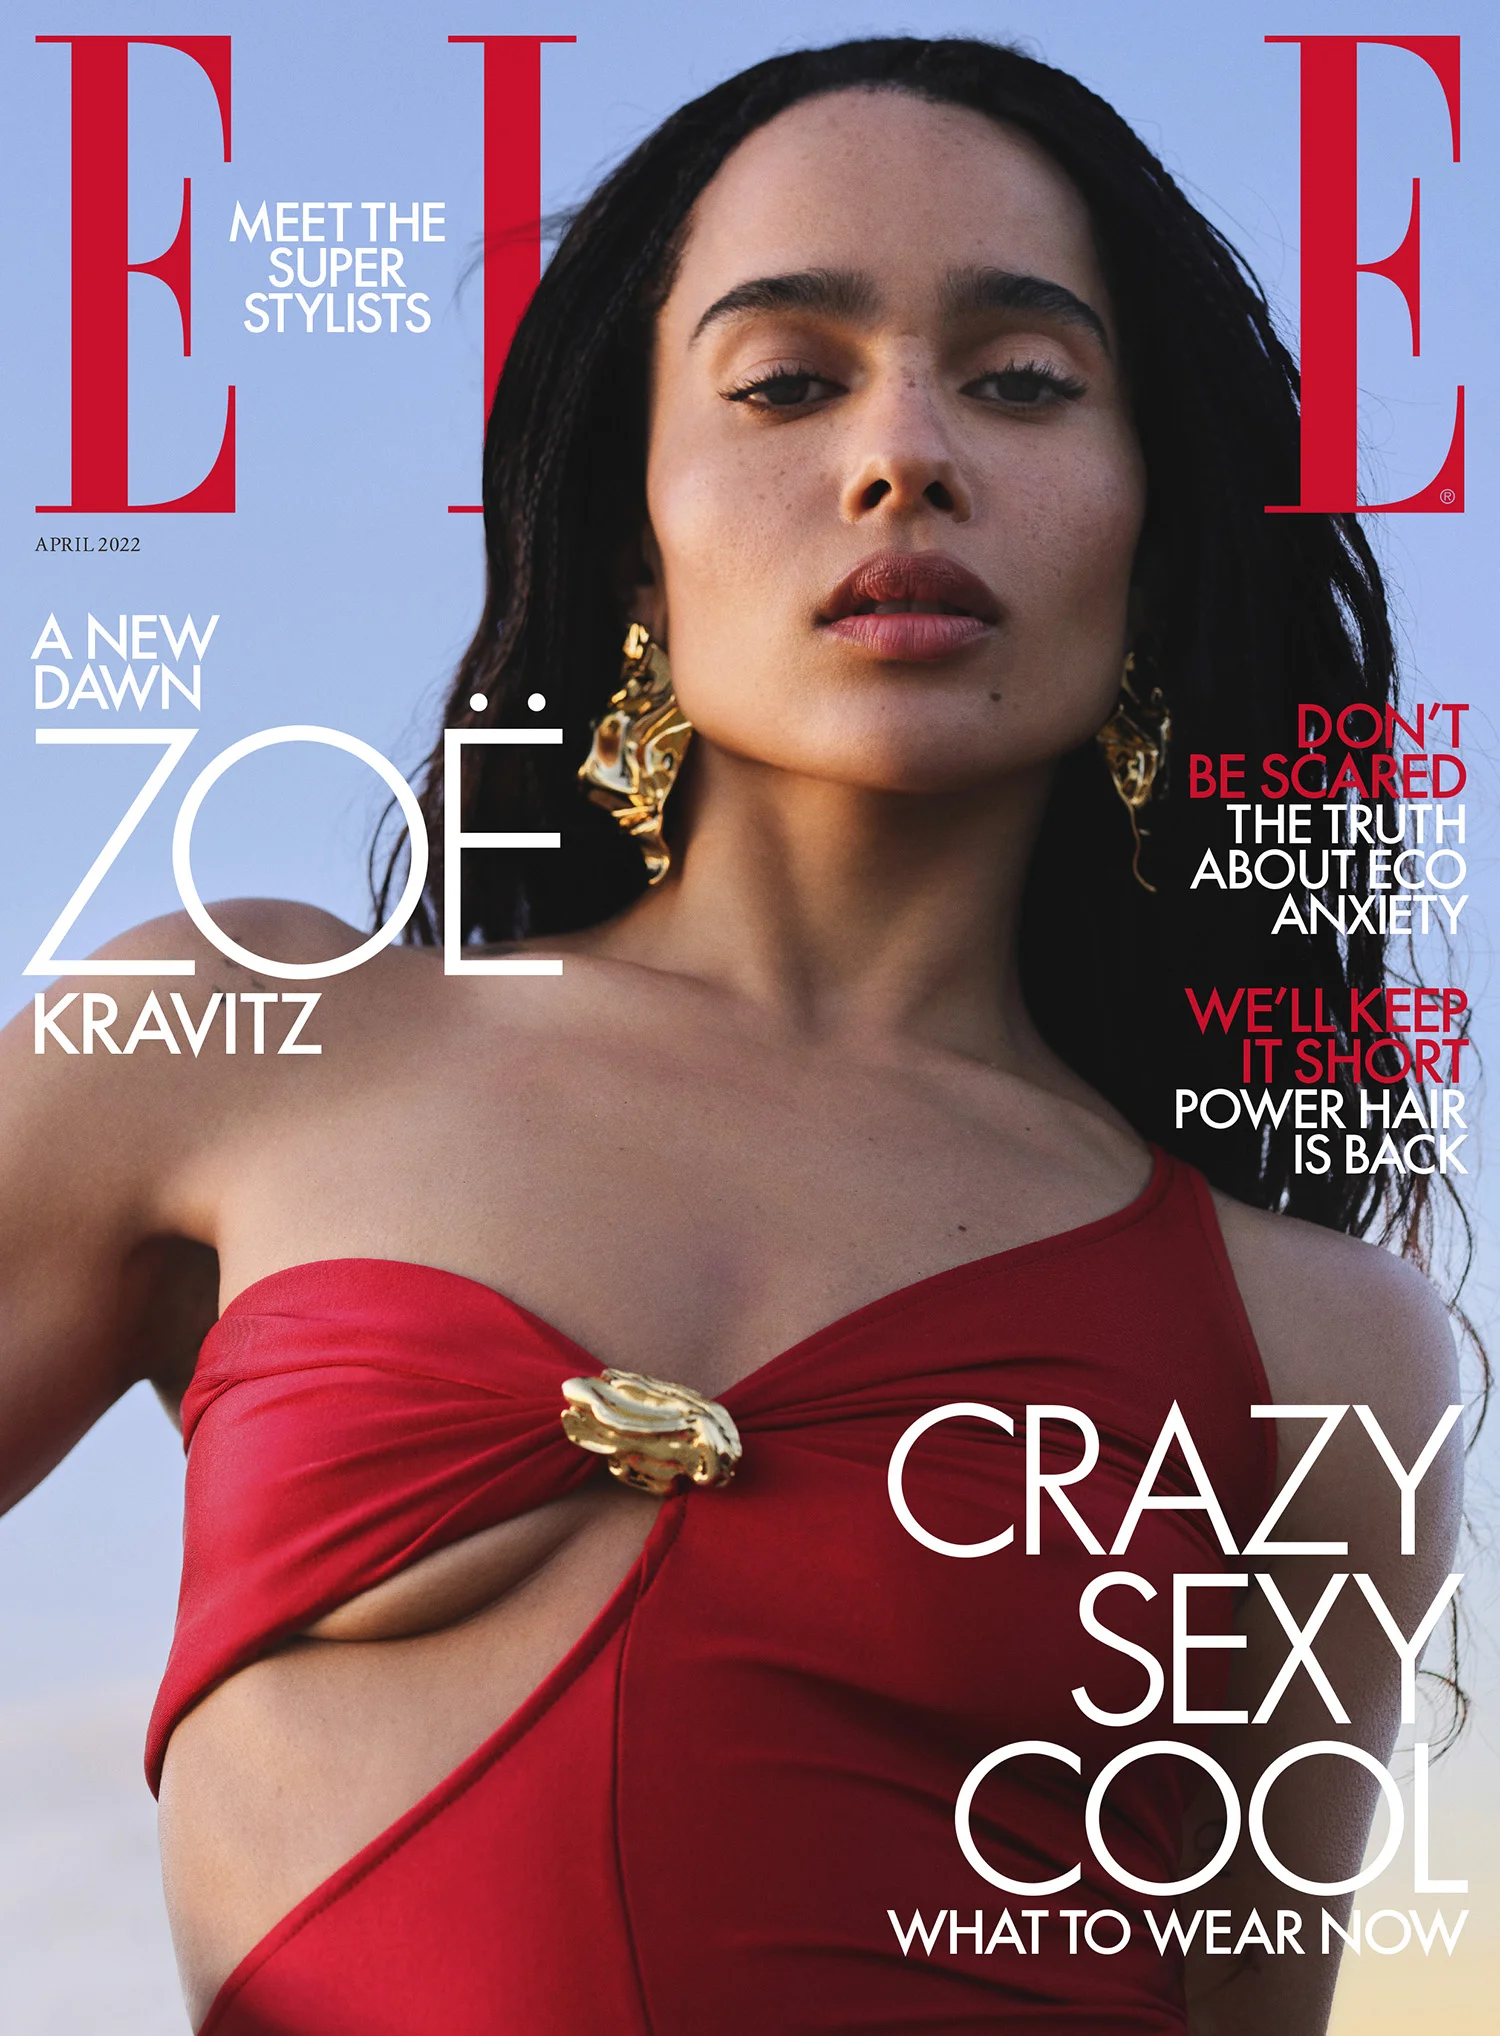 Zoë Kravitz in Saint Laurent on Elle US March 2022 & Elle UK April 2022 covers by Zoey Grossman